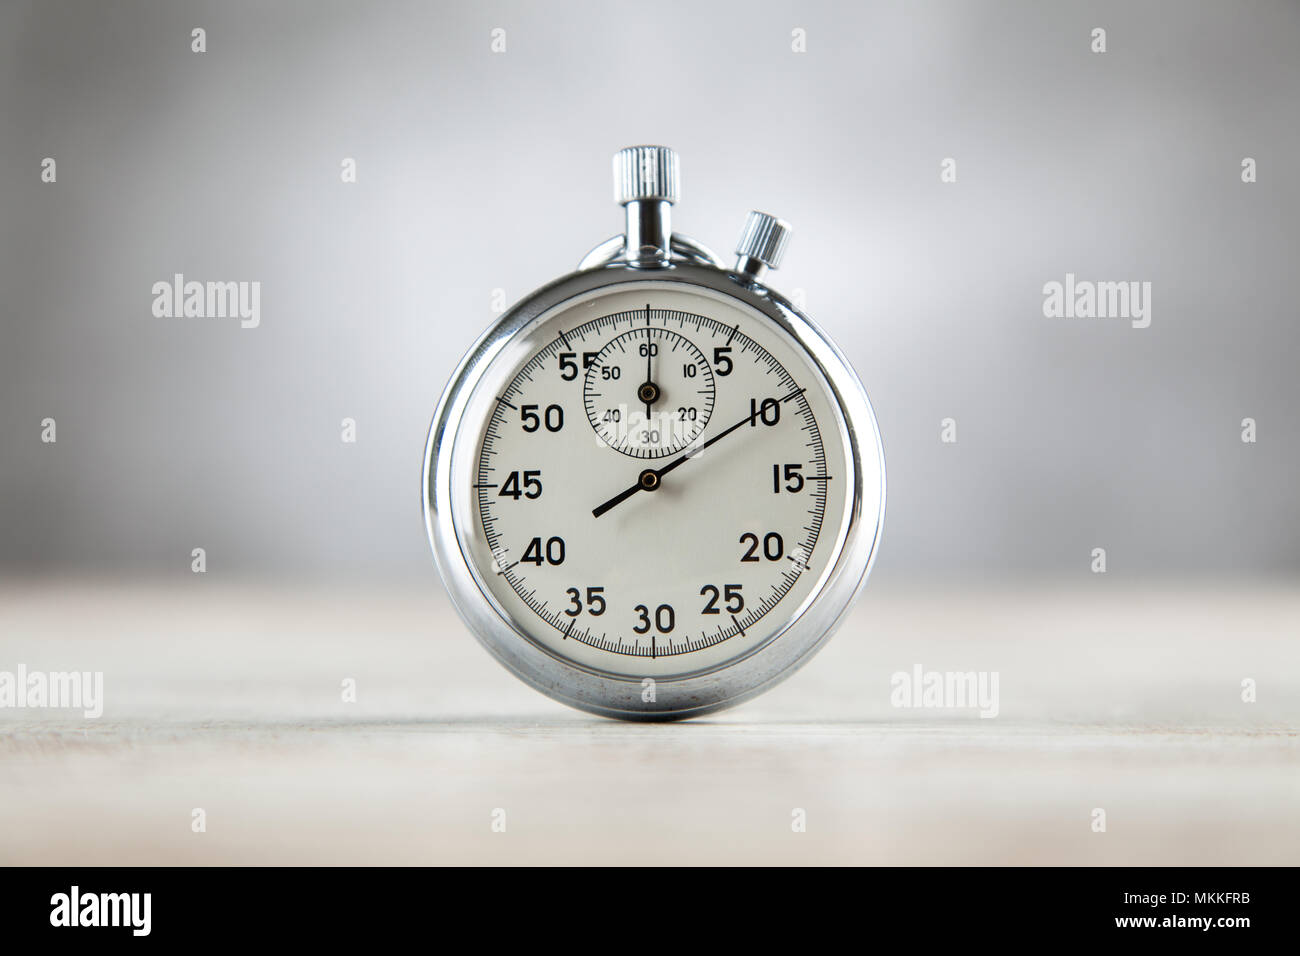 Chronomètre analogique sur fond gris Banque D'Images